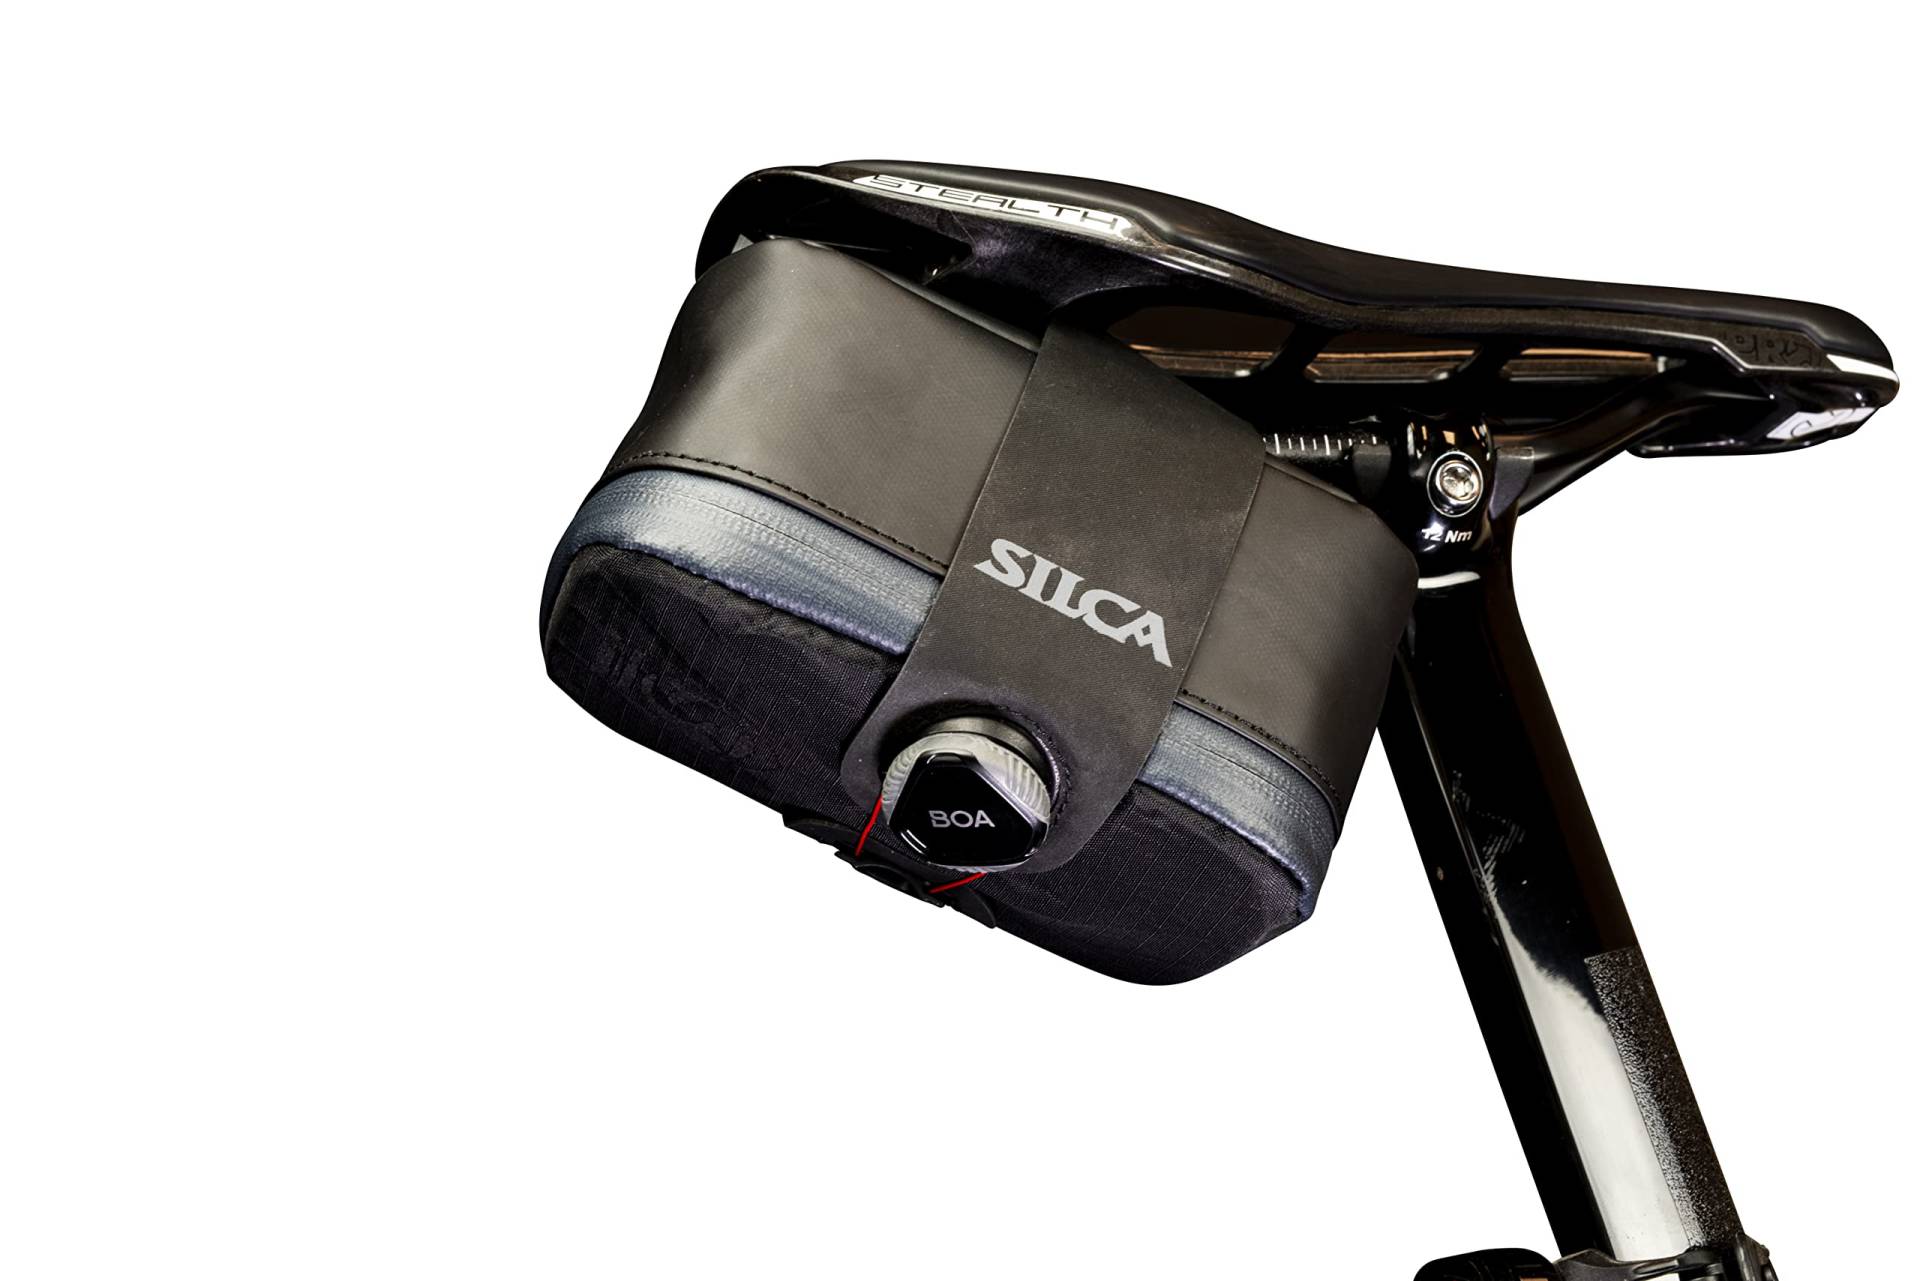 SILCA Mattone Grande | Fahrradsitztasche gesichert durch BOA Capture System | Wasserdichter YKK-Reißverschluss | 77 Kubikzentimeter Stauraum | Fahrradsatteltasche von SILCA